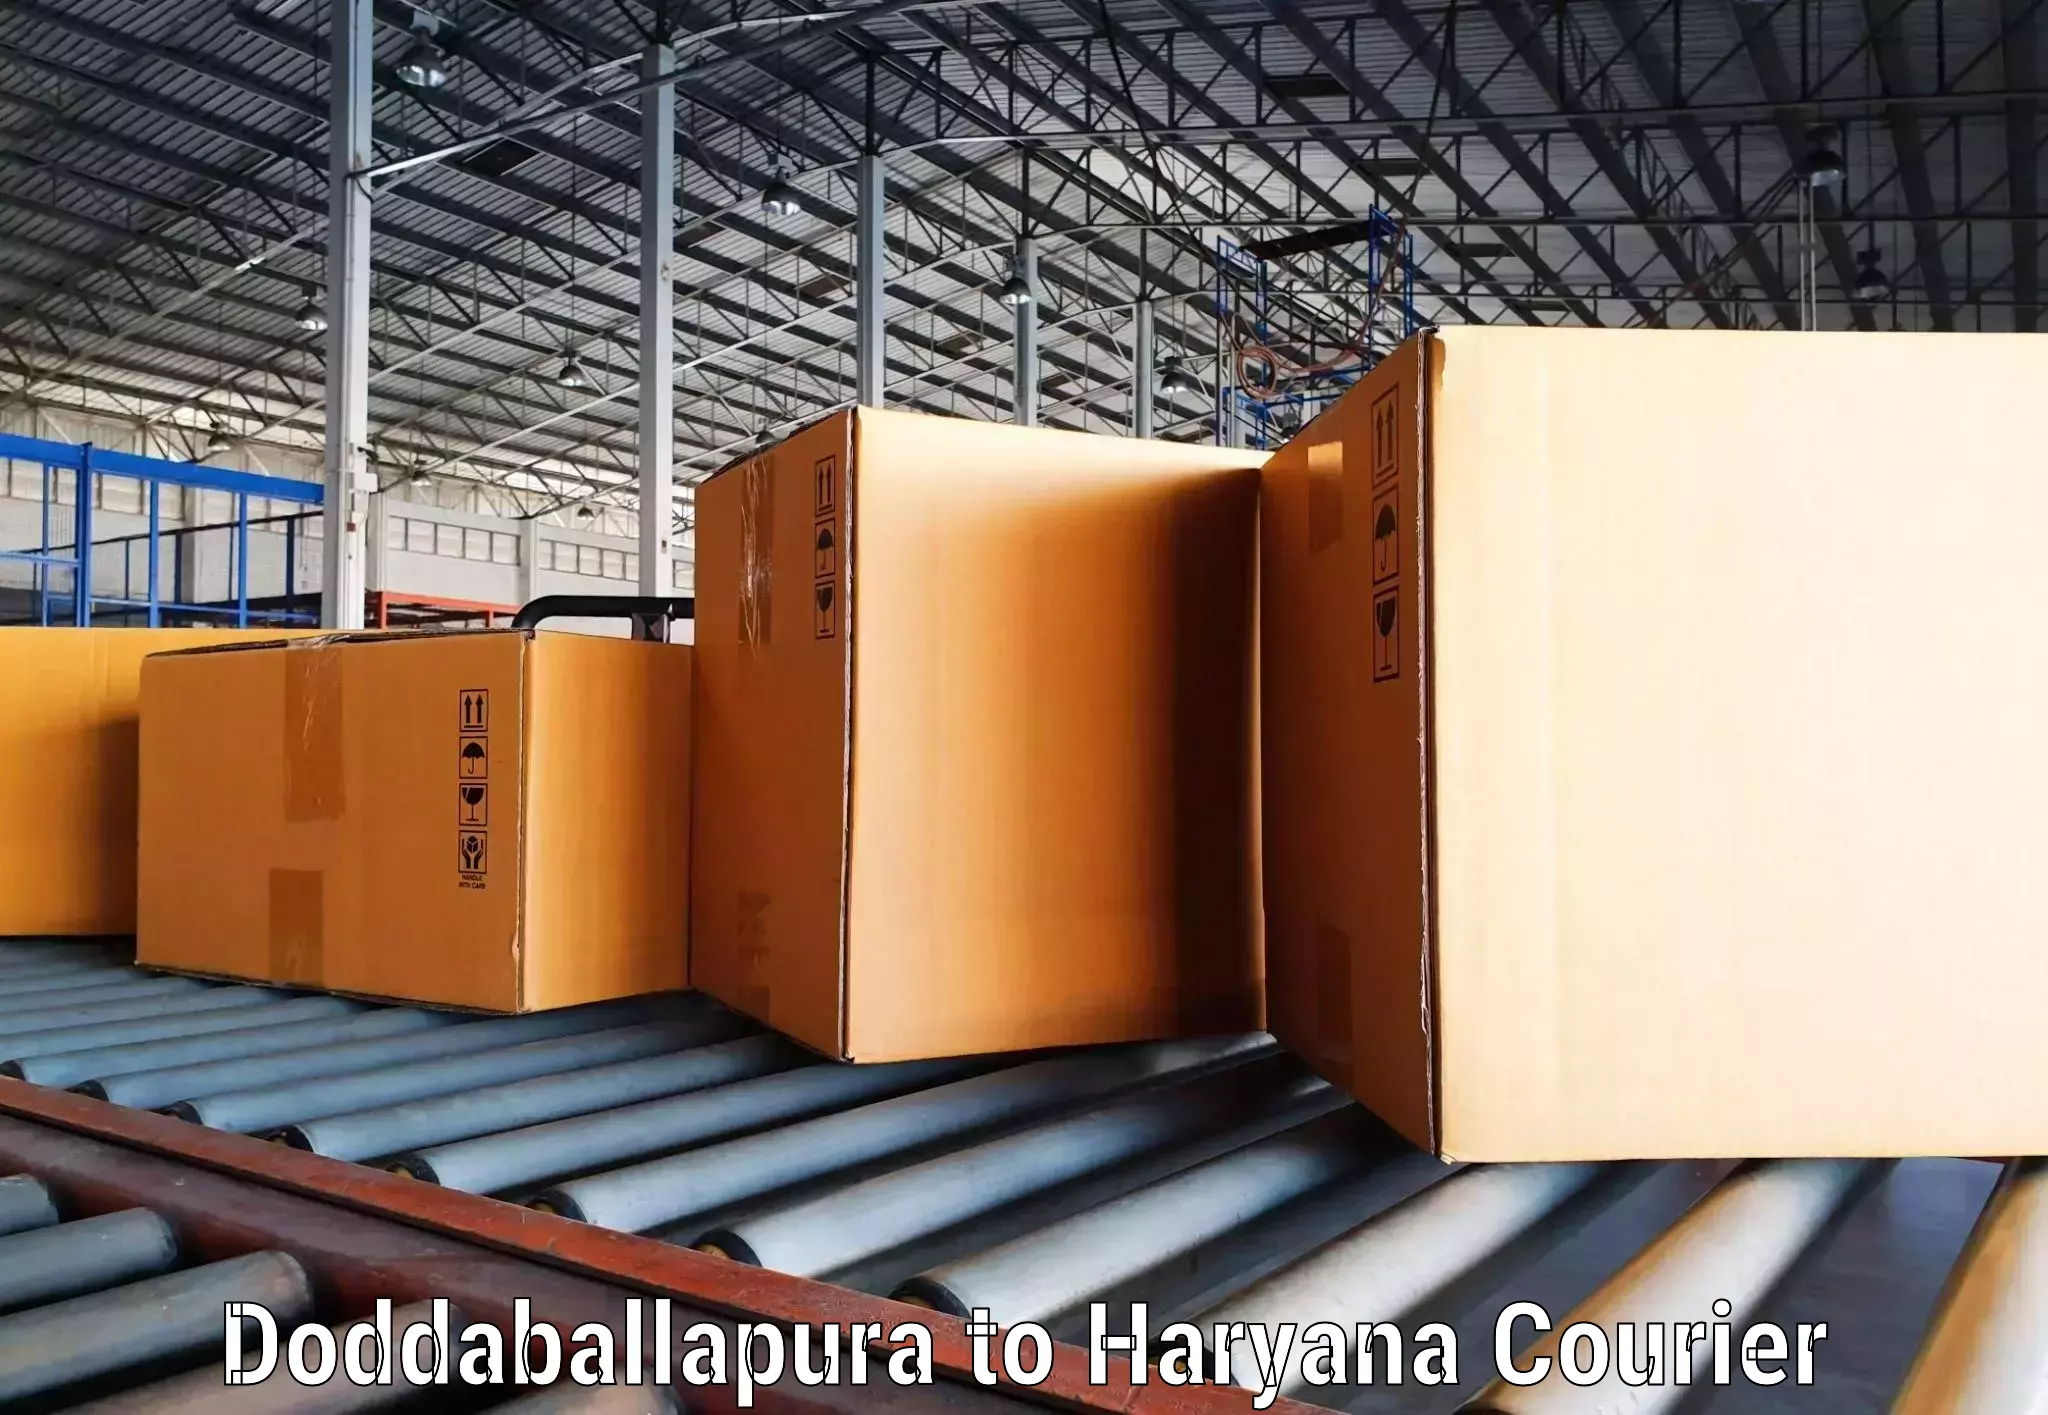 Seamless shipping experience in Doddaballapura to Haryana